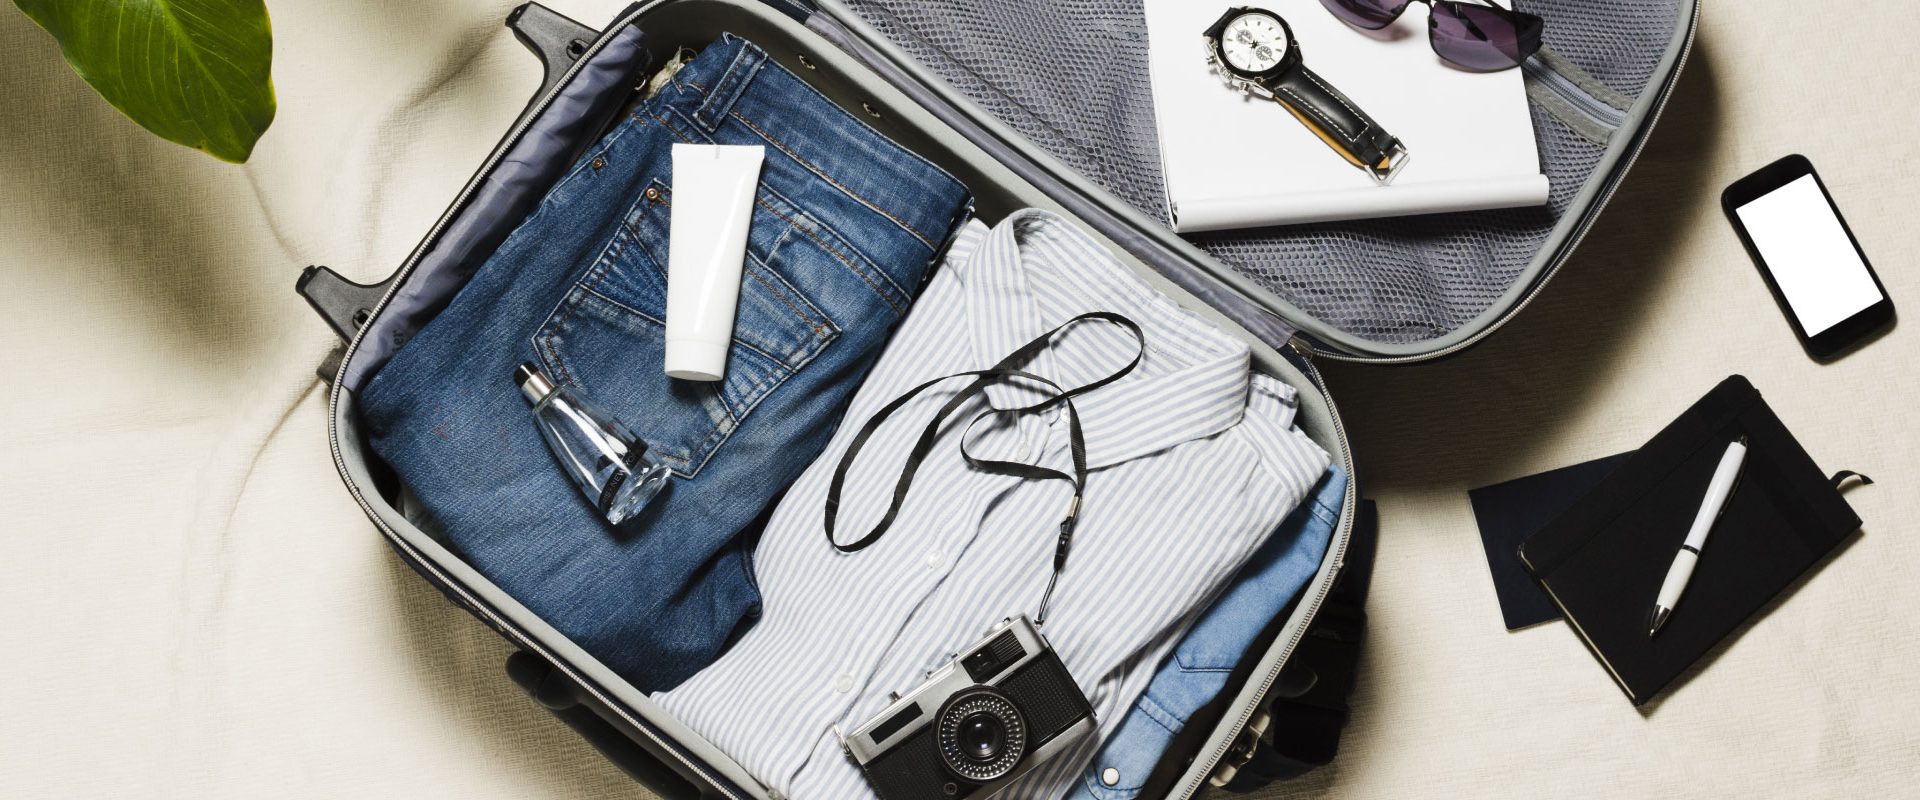 Bolsa de viaje para meter toda la ropa que necesitas para tus